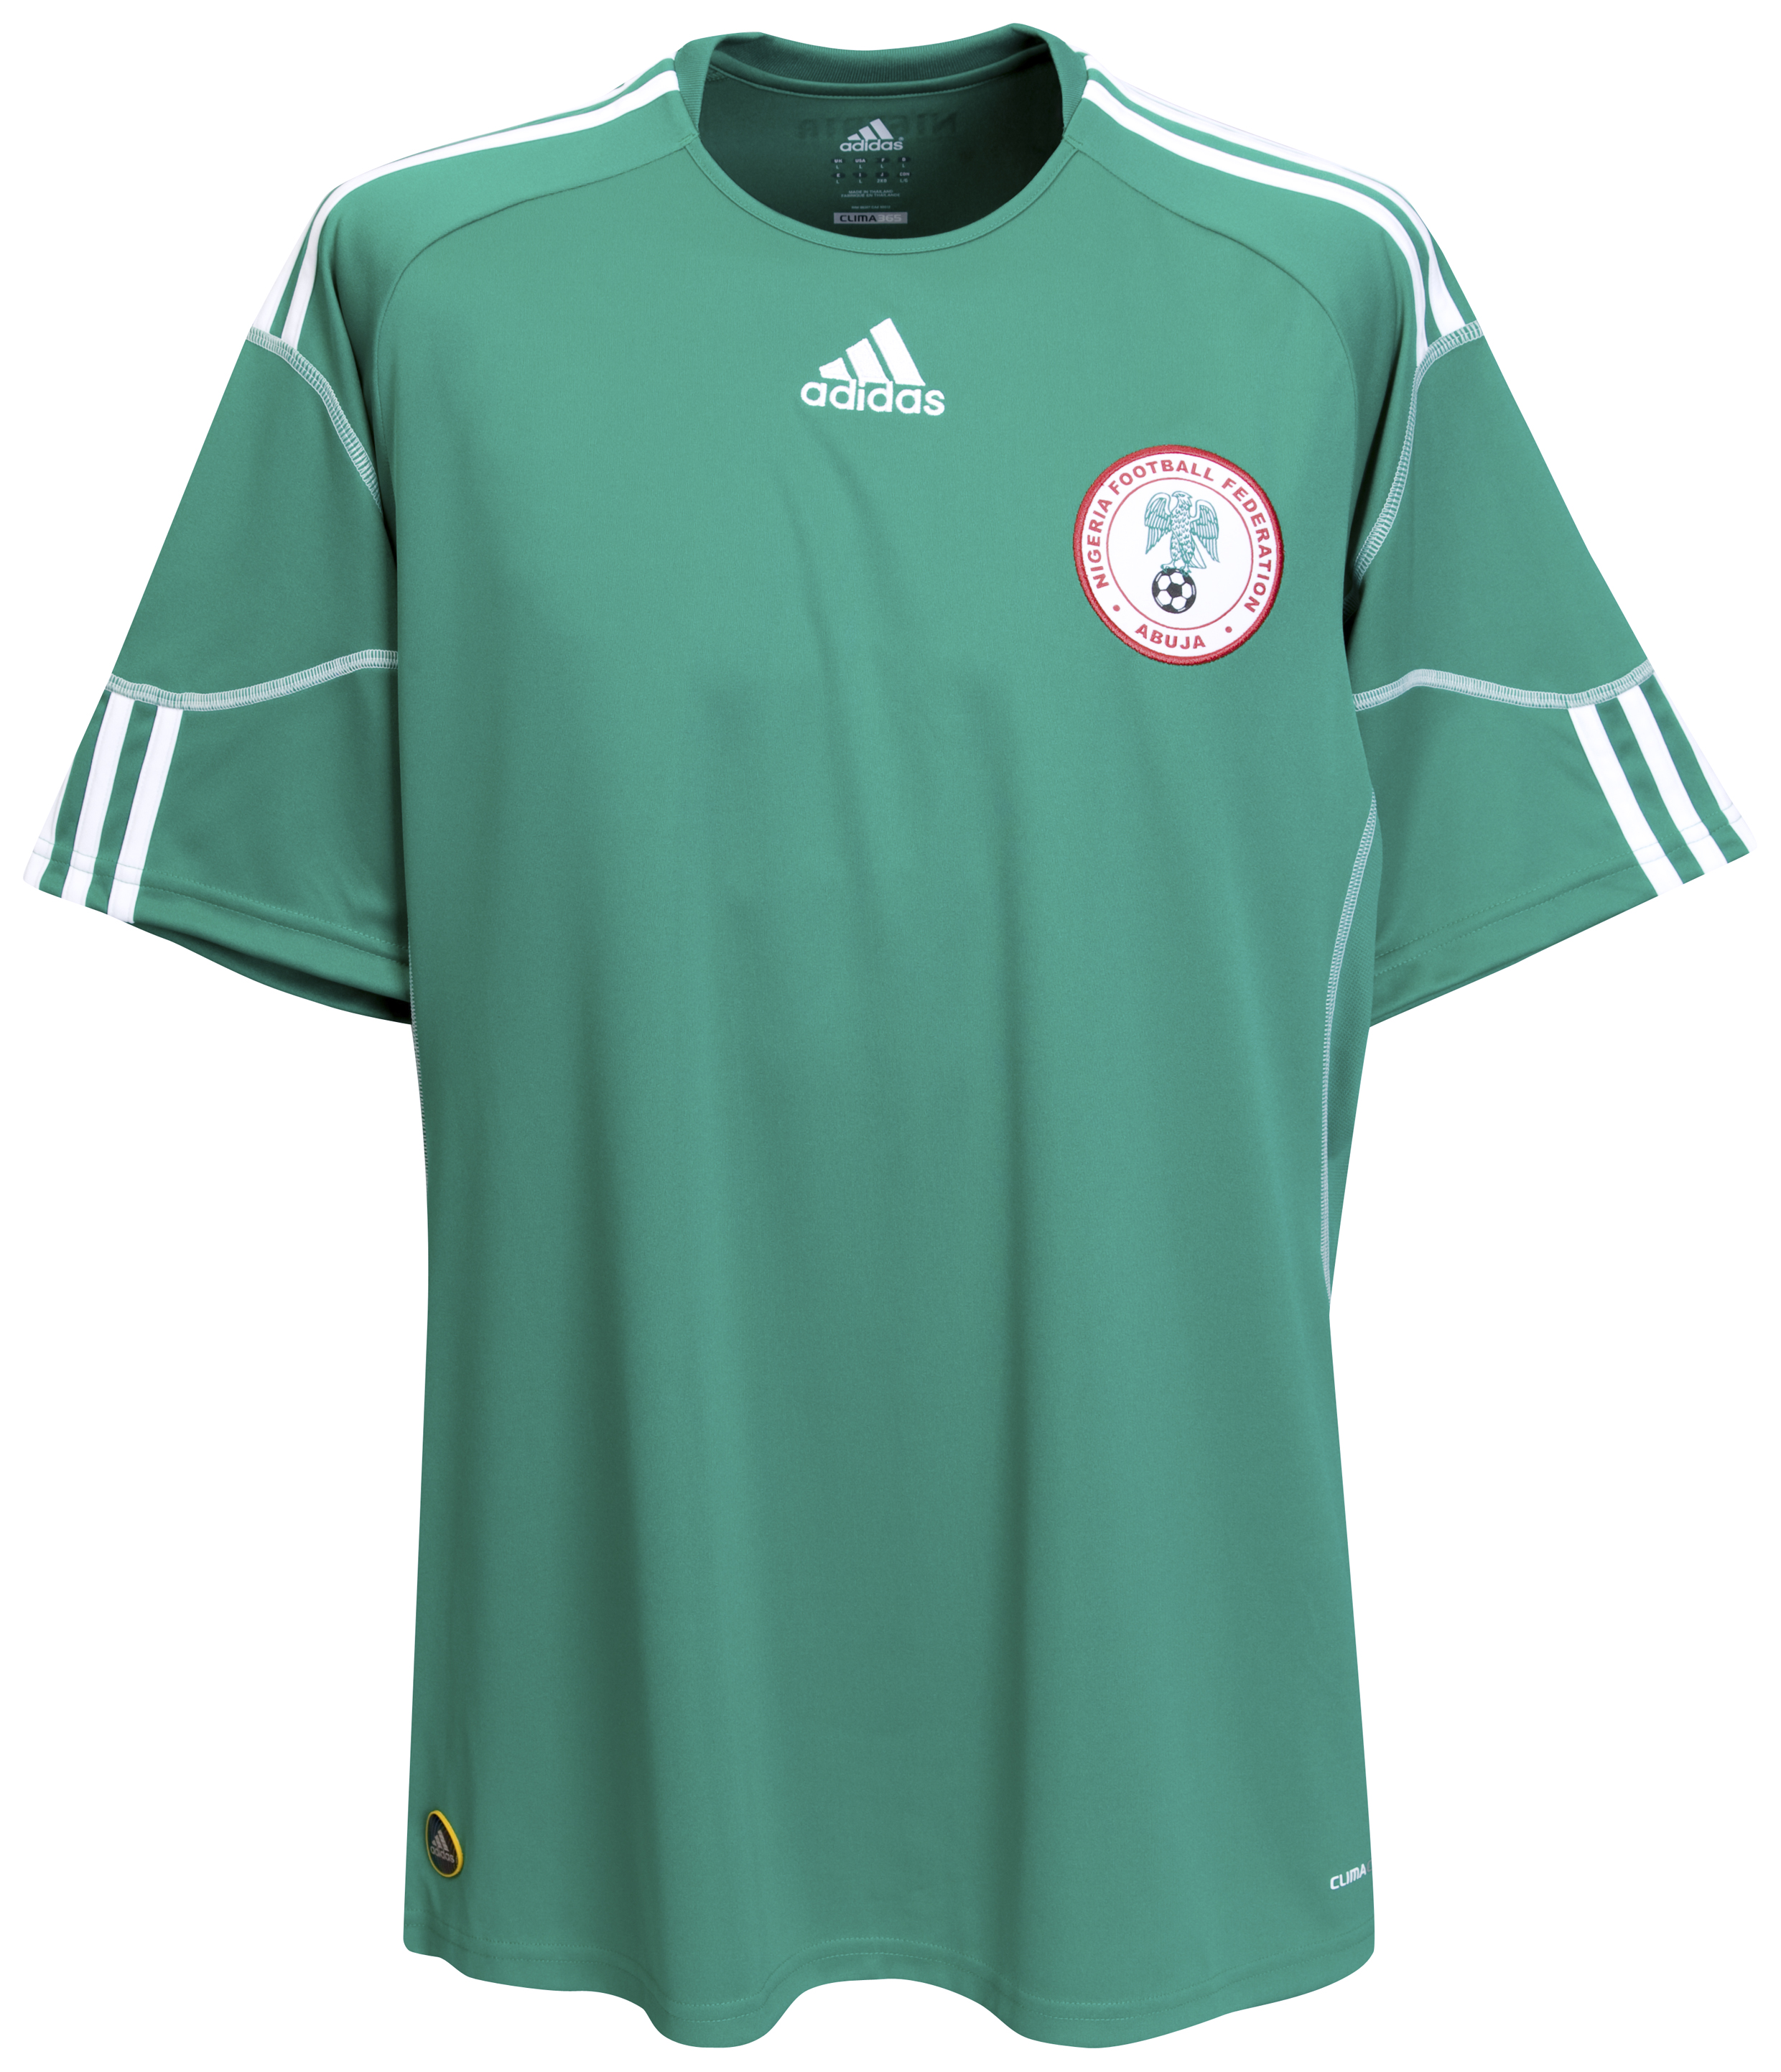 الملابس الخاصة بالمنتخبات في كأس العالم (جنوب أفريقيا 2010) Kb-63746